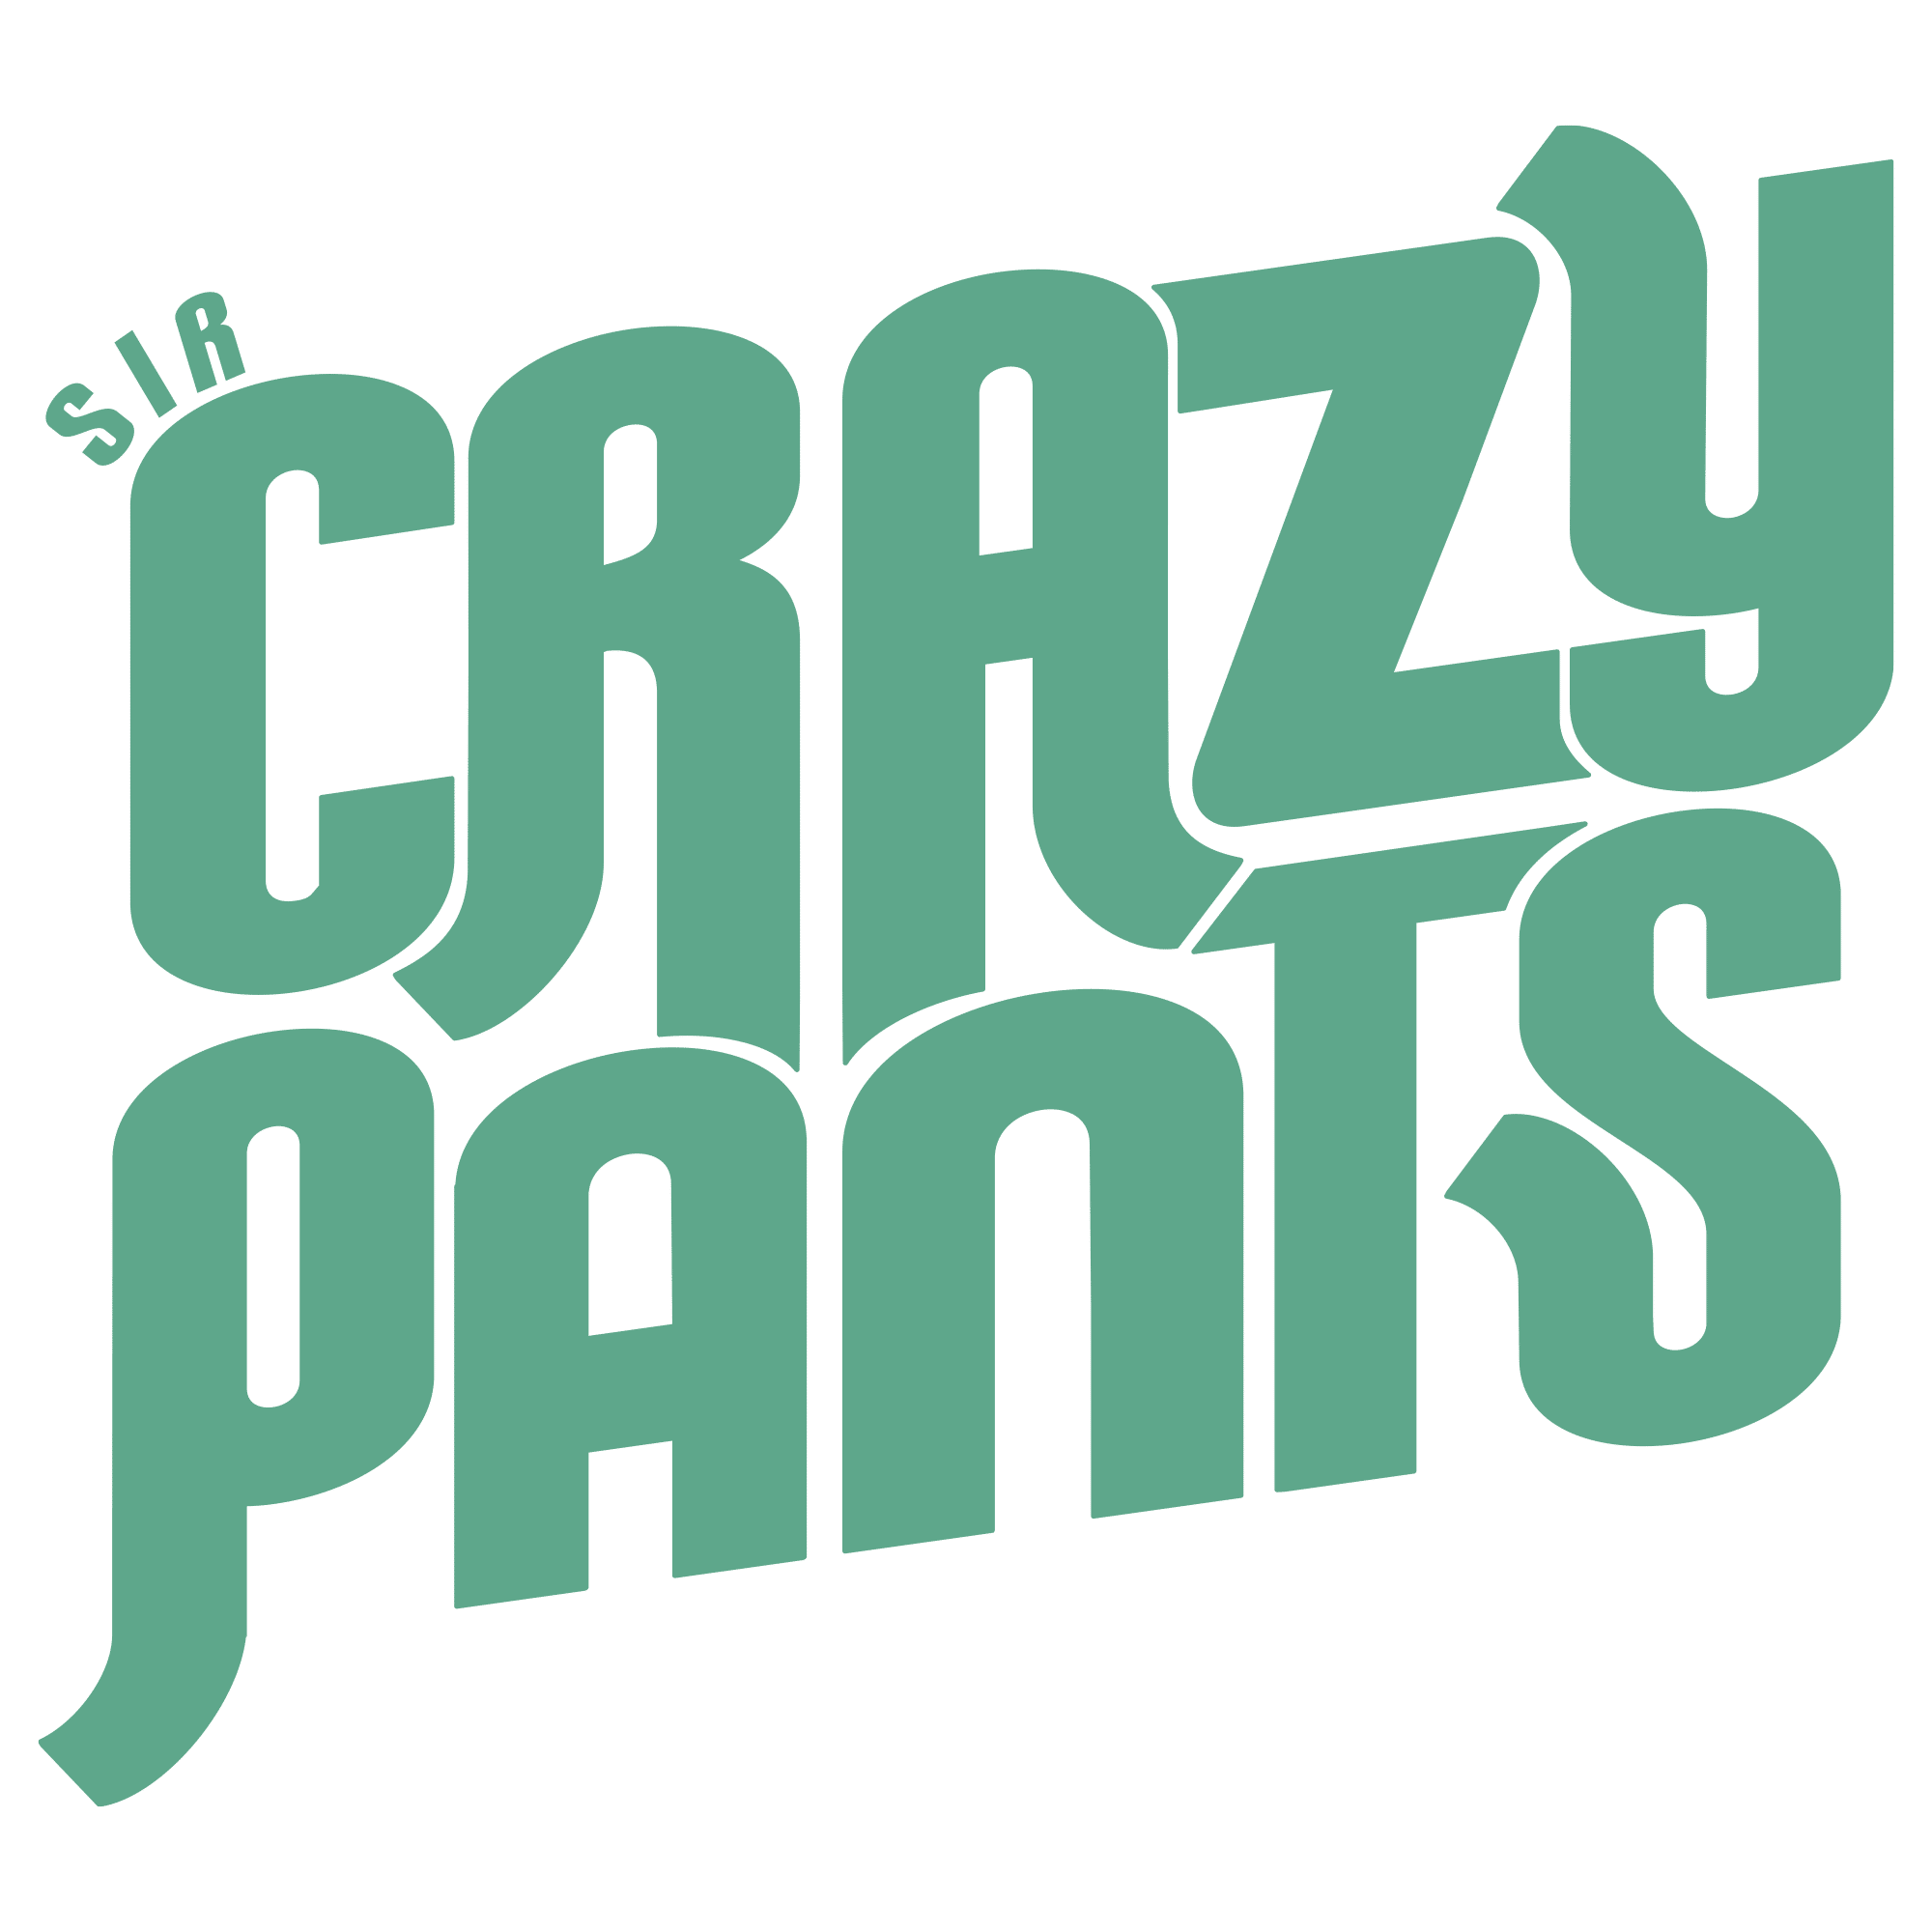 Sir Crazy Pants - AthFest